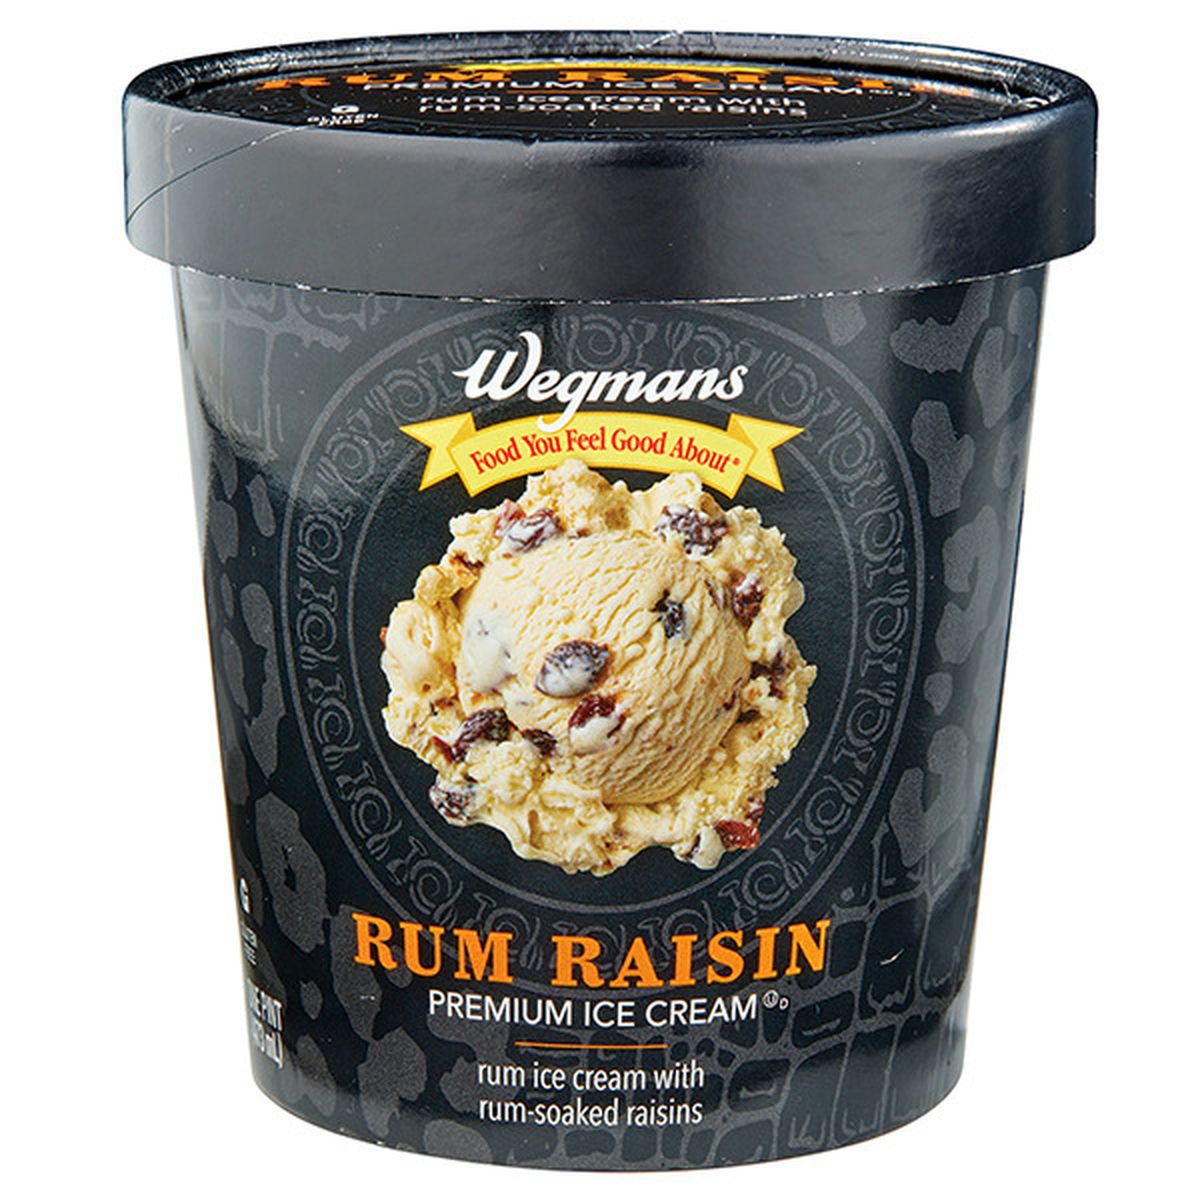 Calories in Wegmans Rum Raisin Premium Ice Cream